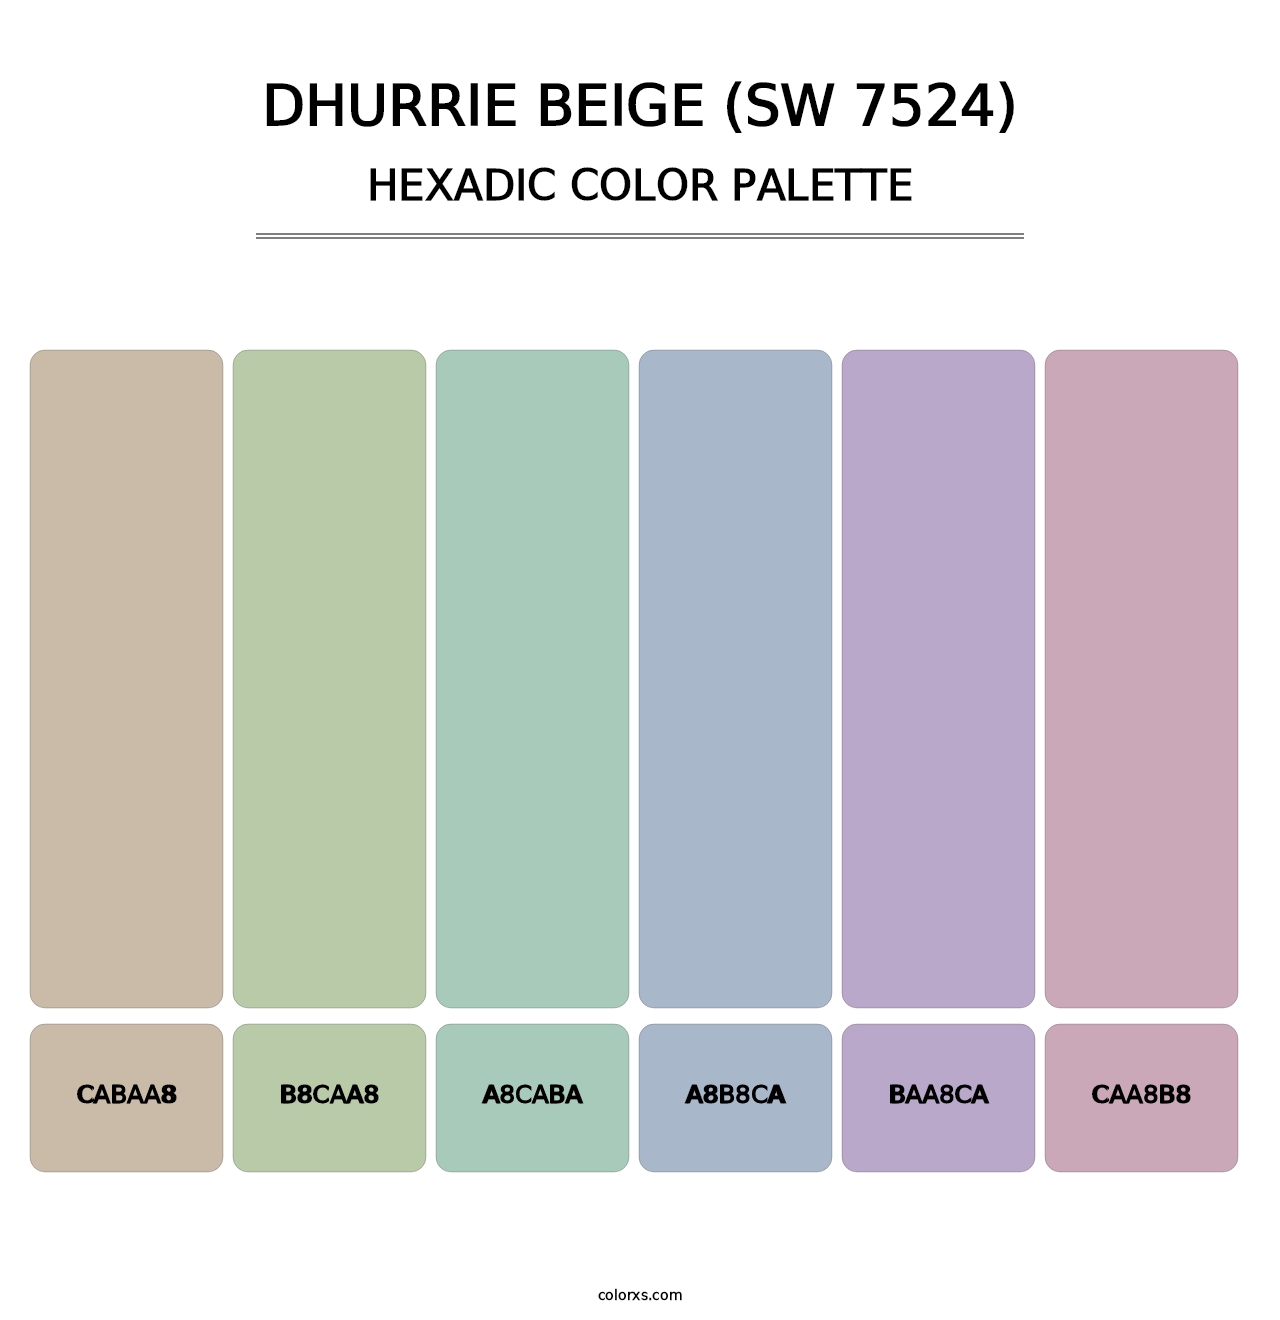 Dhurrie Beige (SW 7524) - Hexadic Color Palette